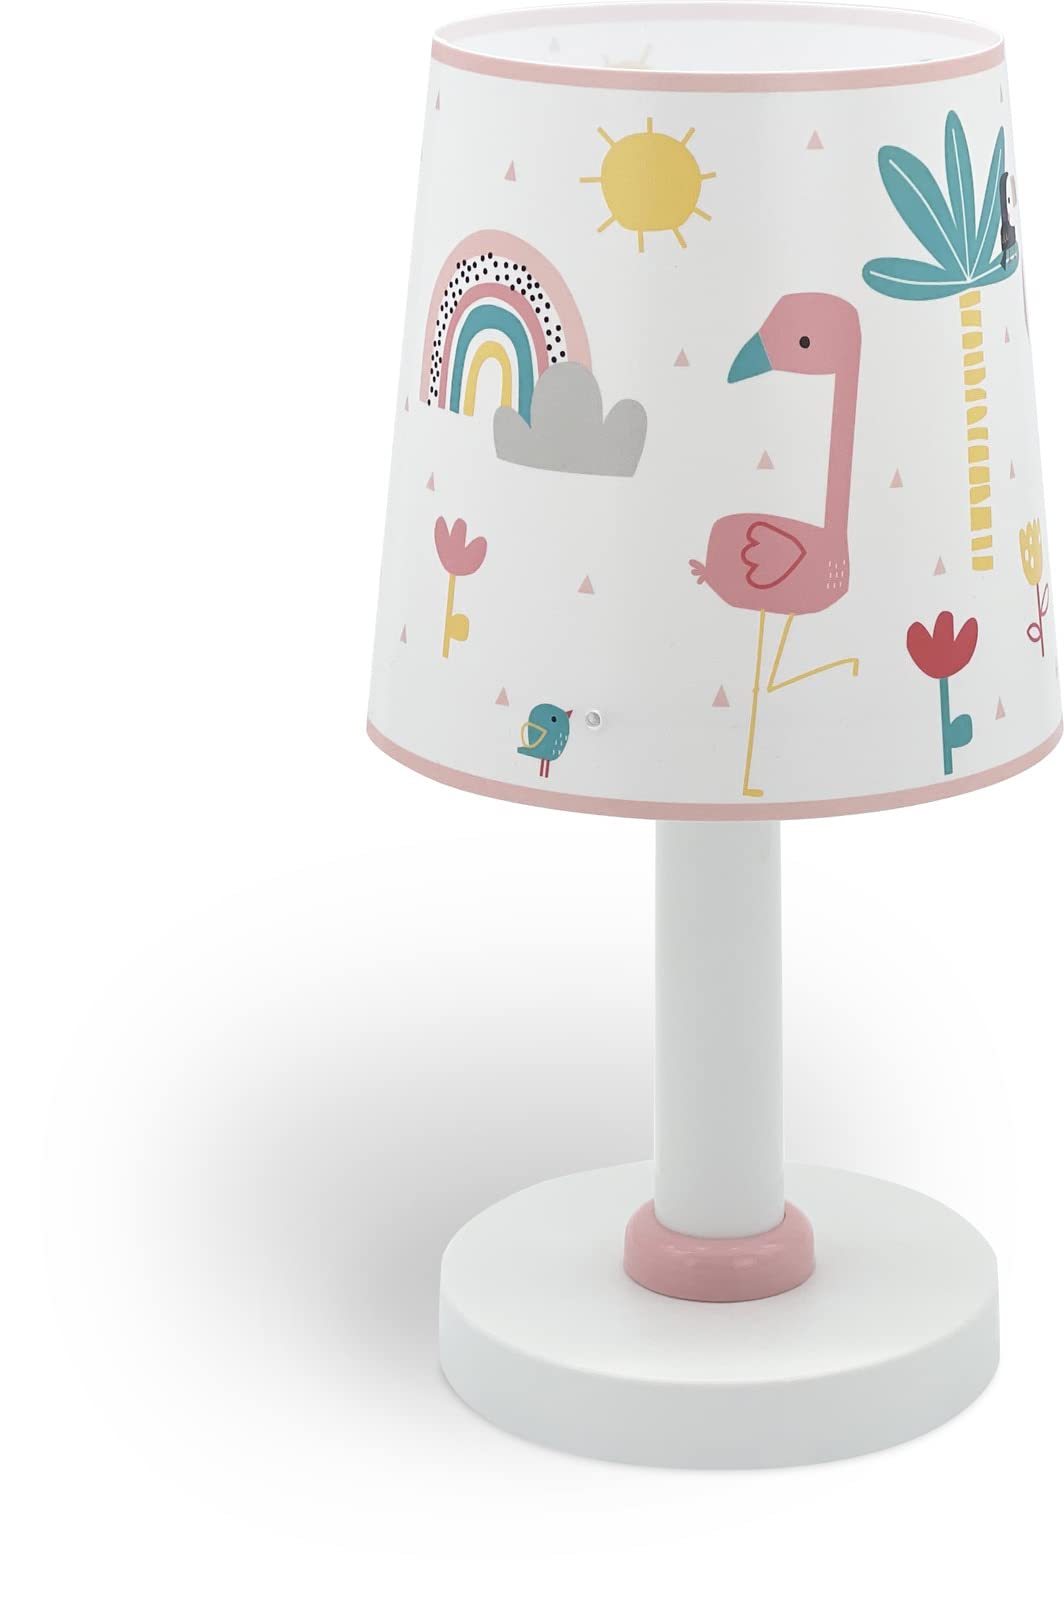 Dalber Kinder Tischlampe Nachttischlampe kinderzimmer Flamingo Flämisch Tiere, 82461, E14